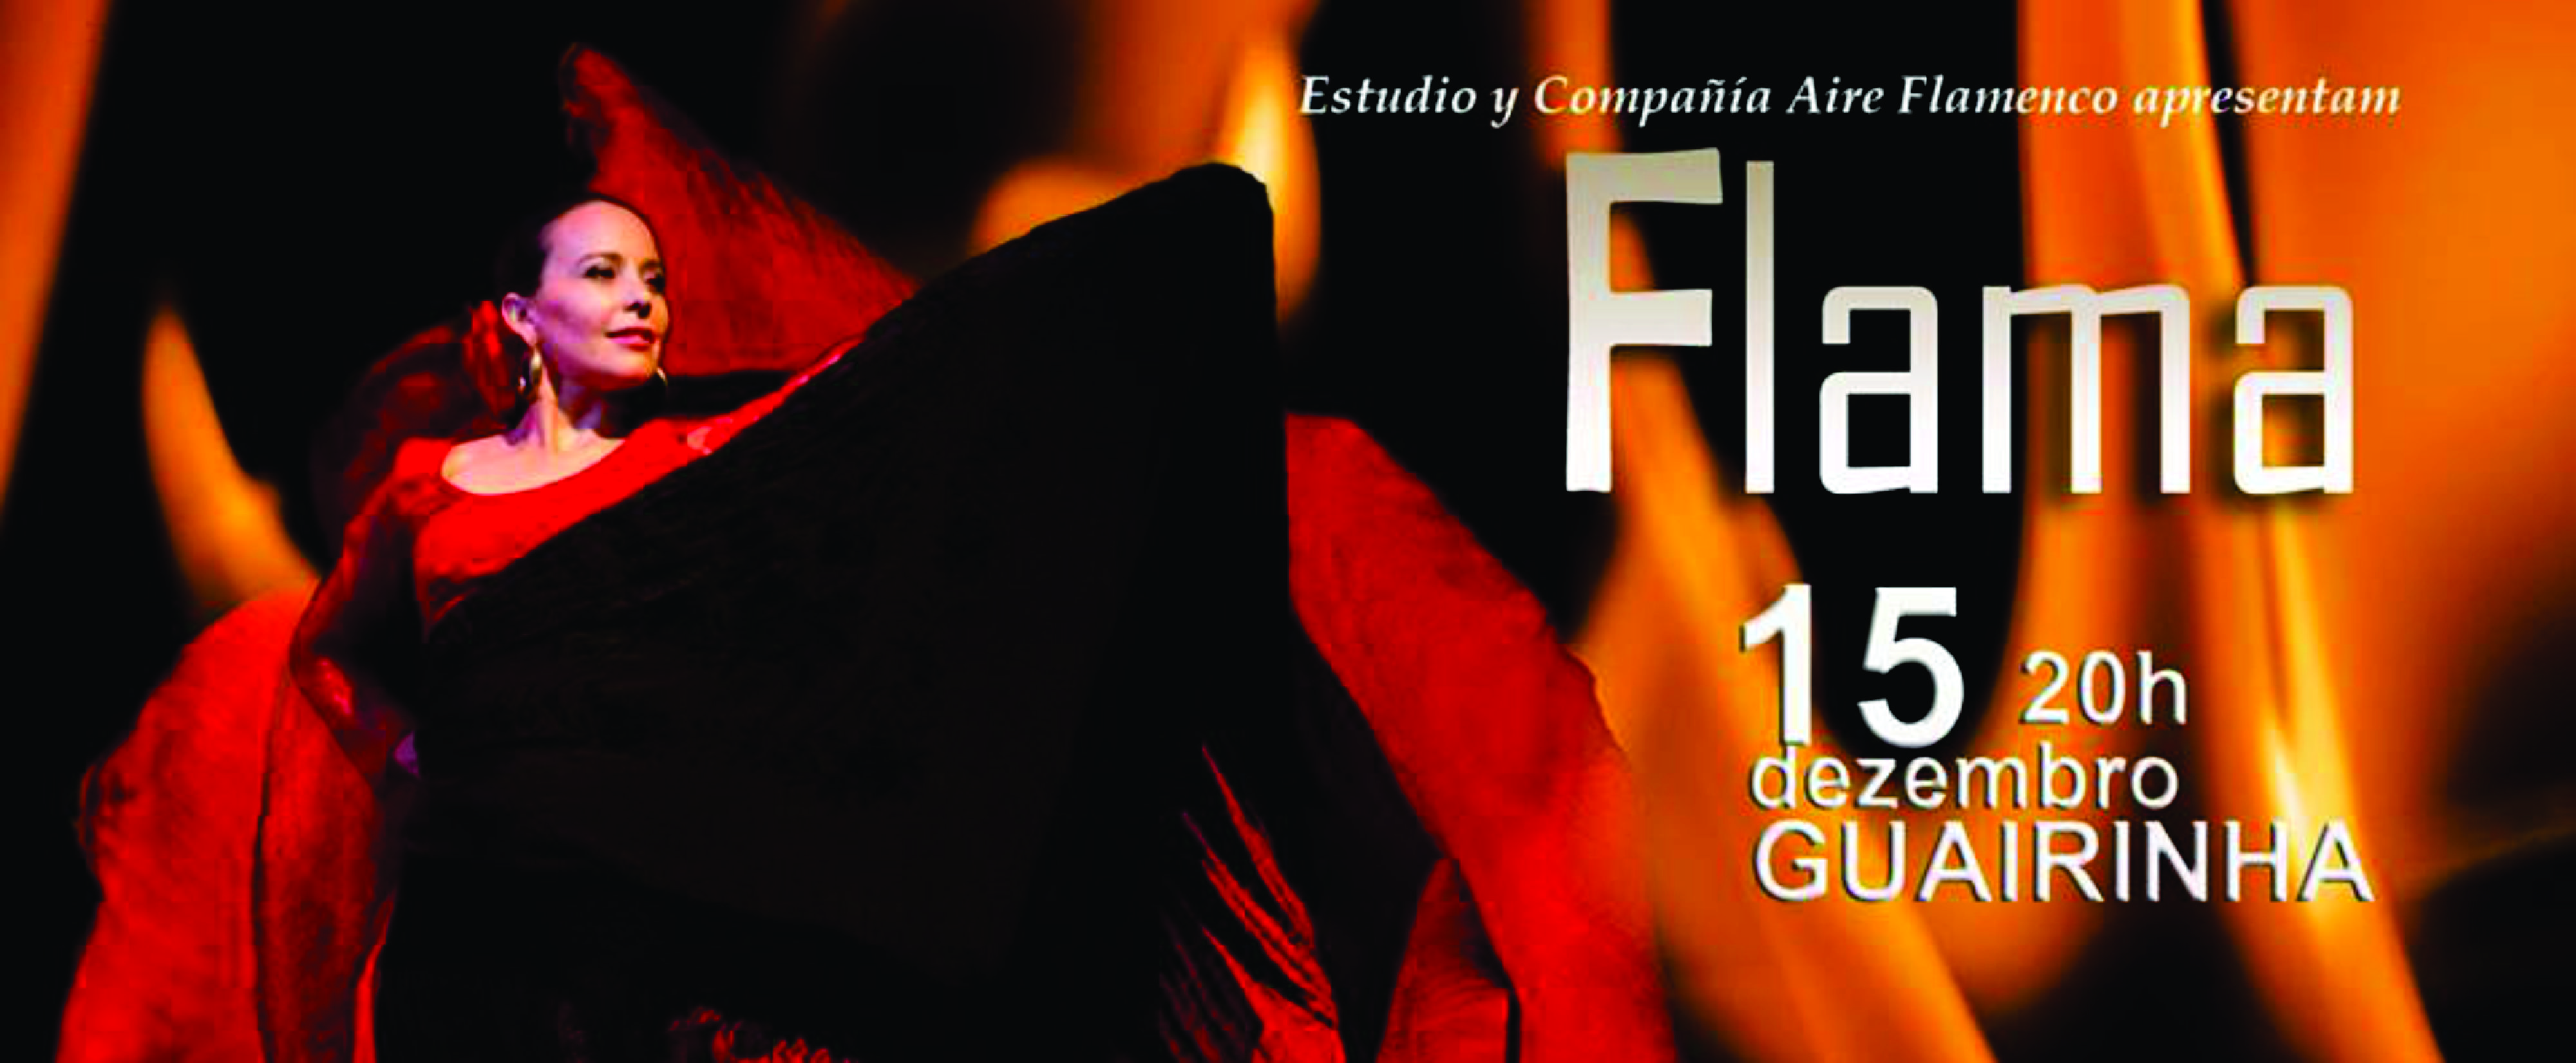 Arte: Espetáculo Flama em Curitiba